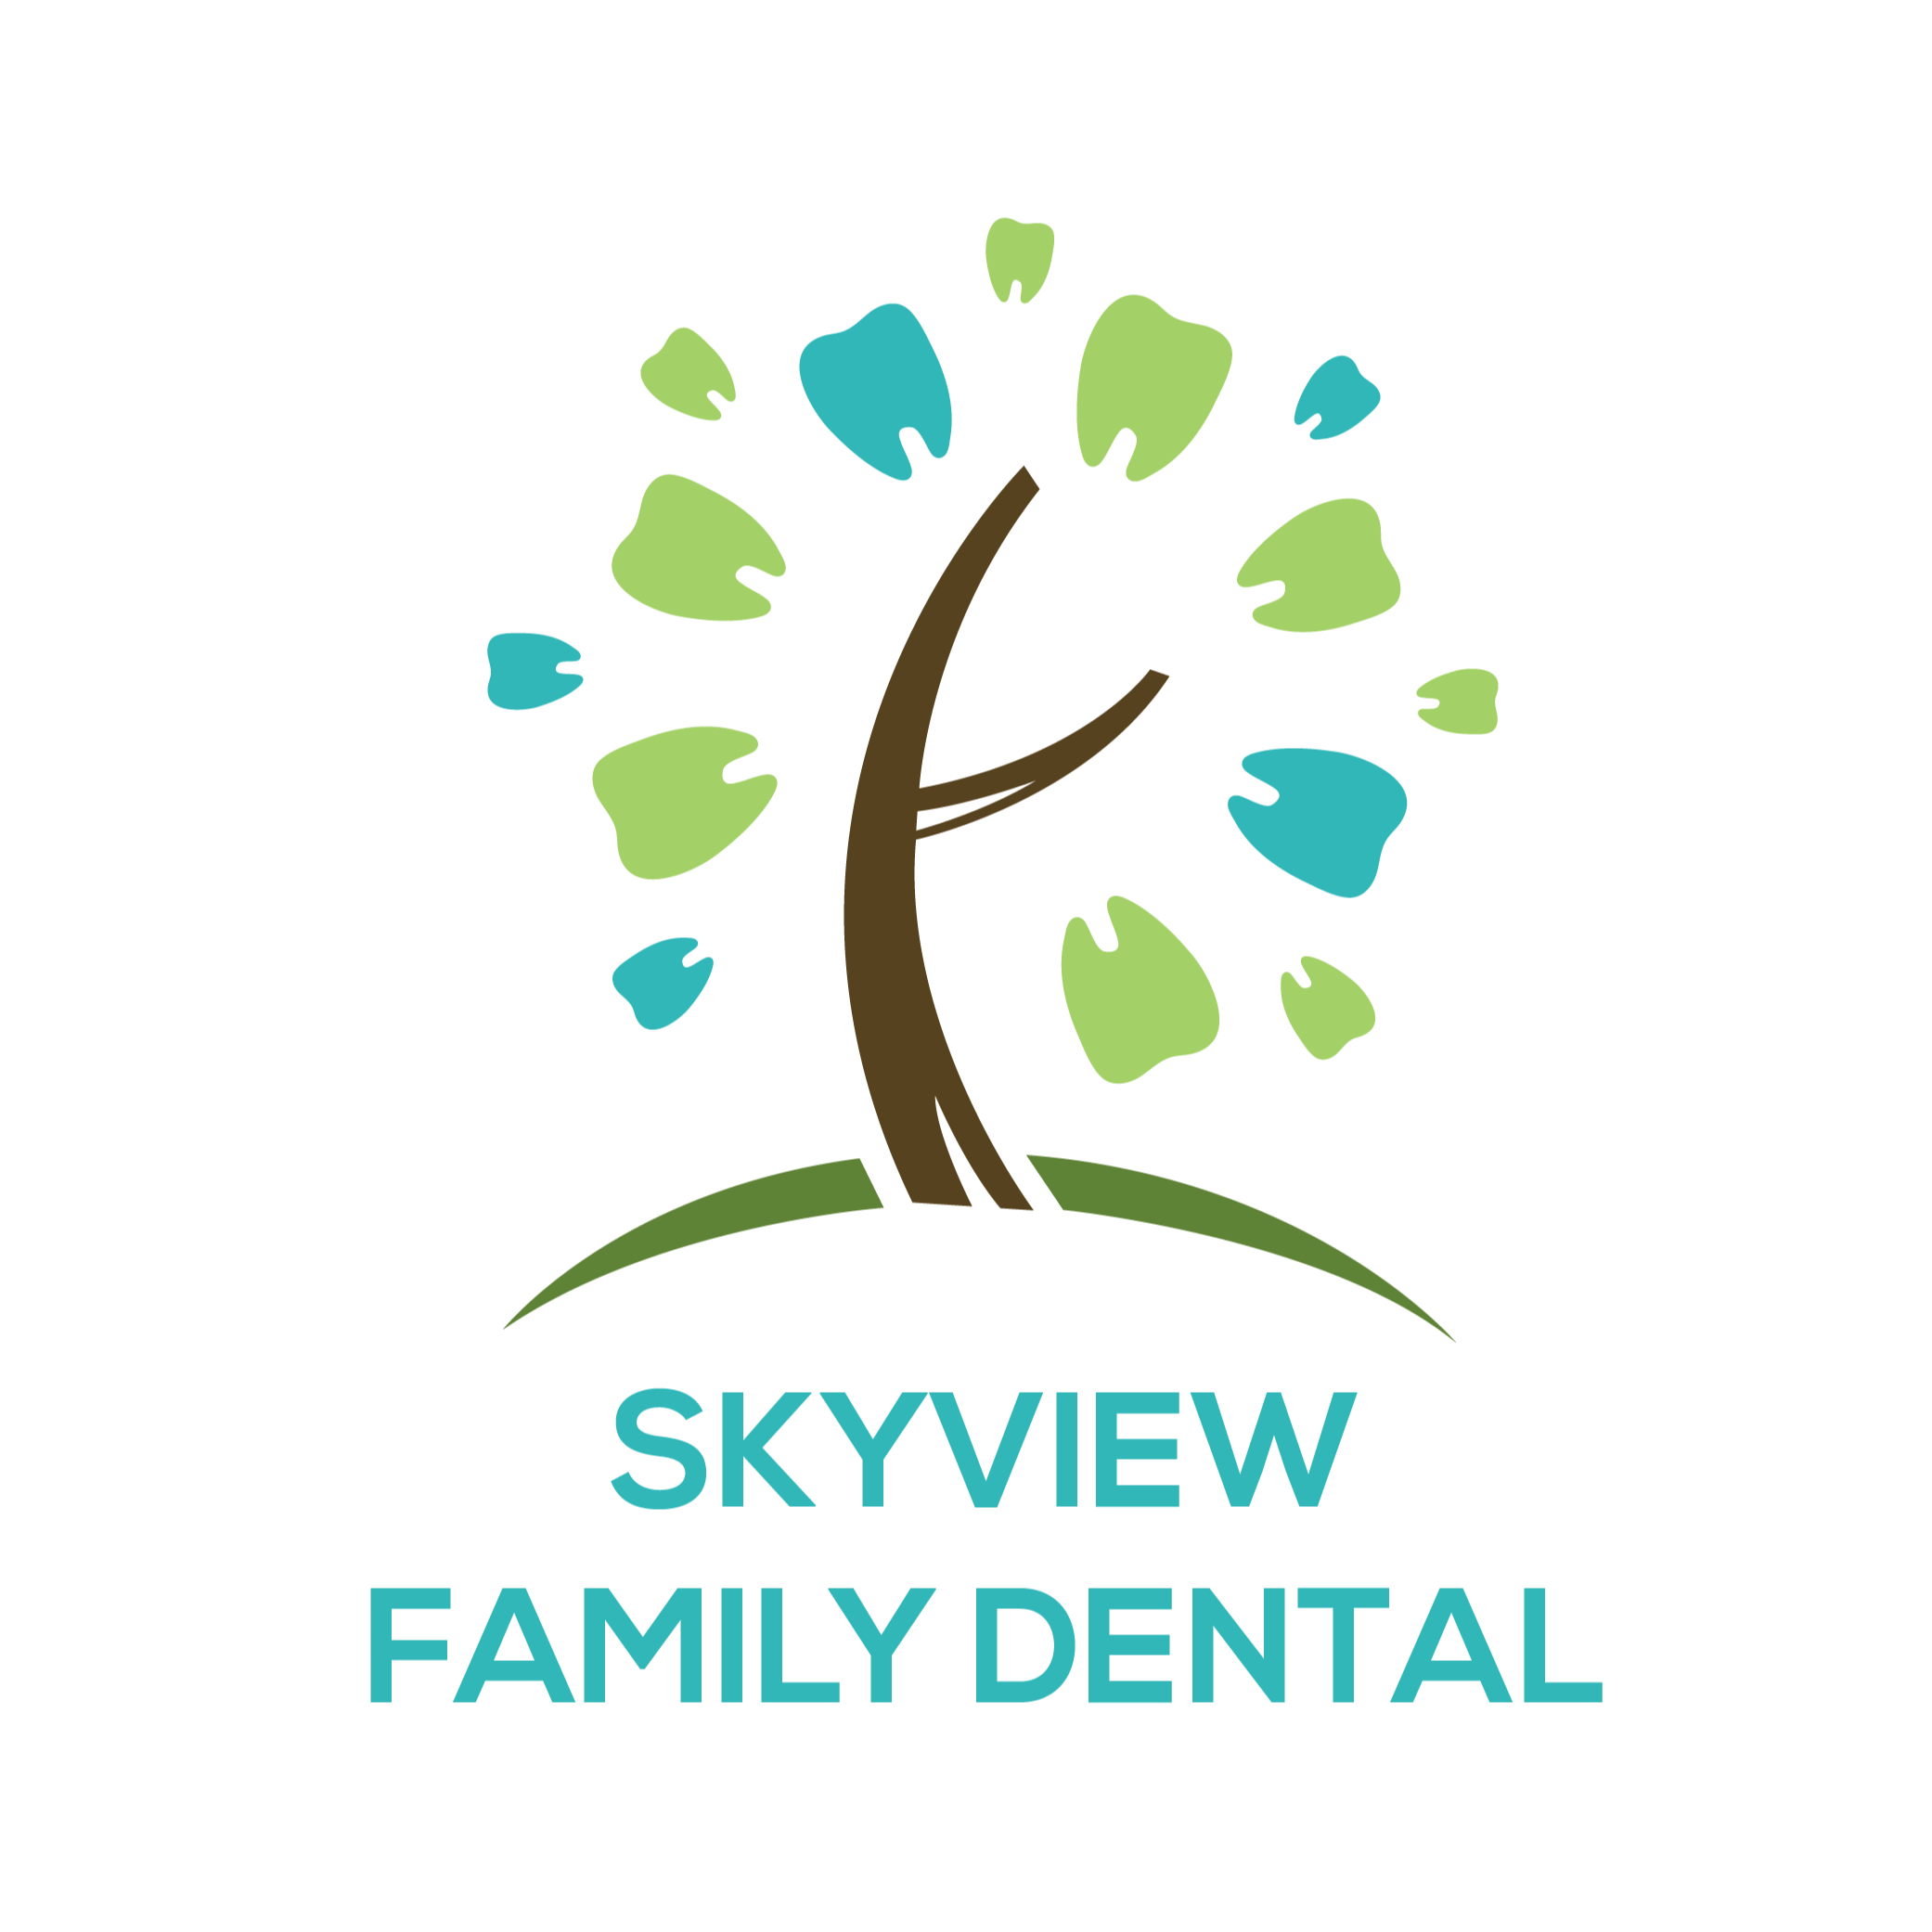 Skyview Family Dental - Tulsa, OK 74135 - (918)492-3003 | ShowMeLocal.com